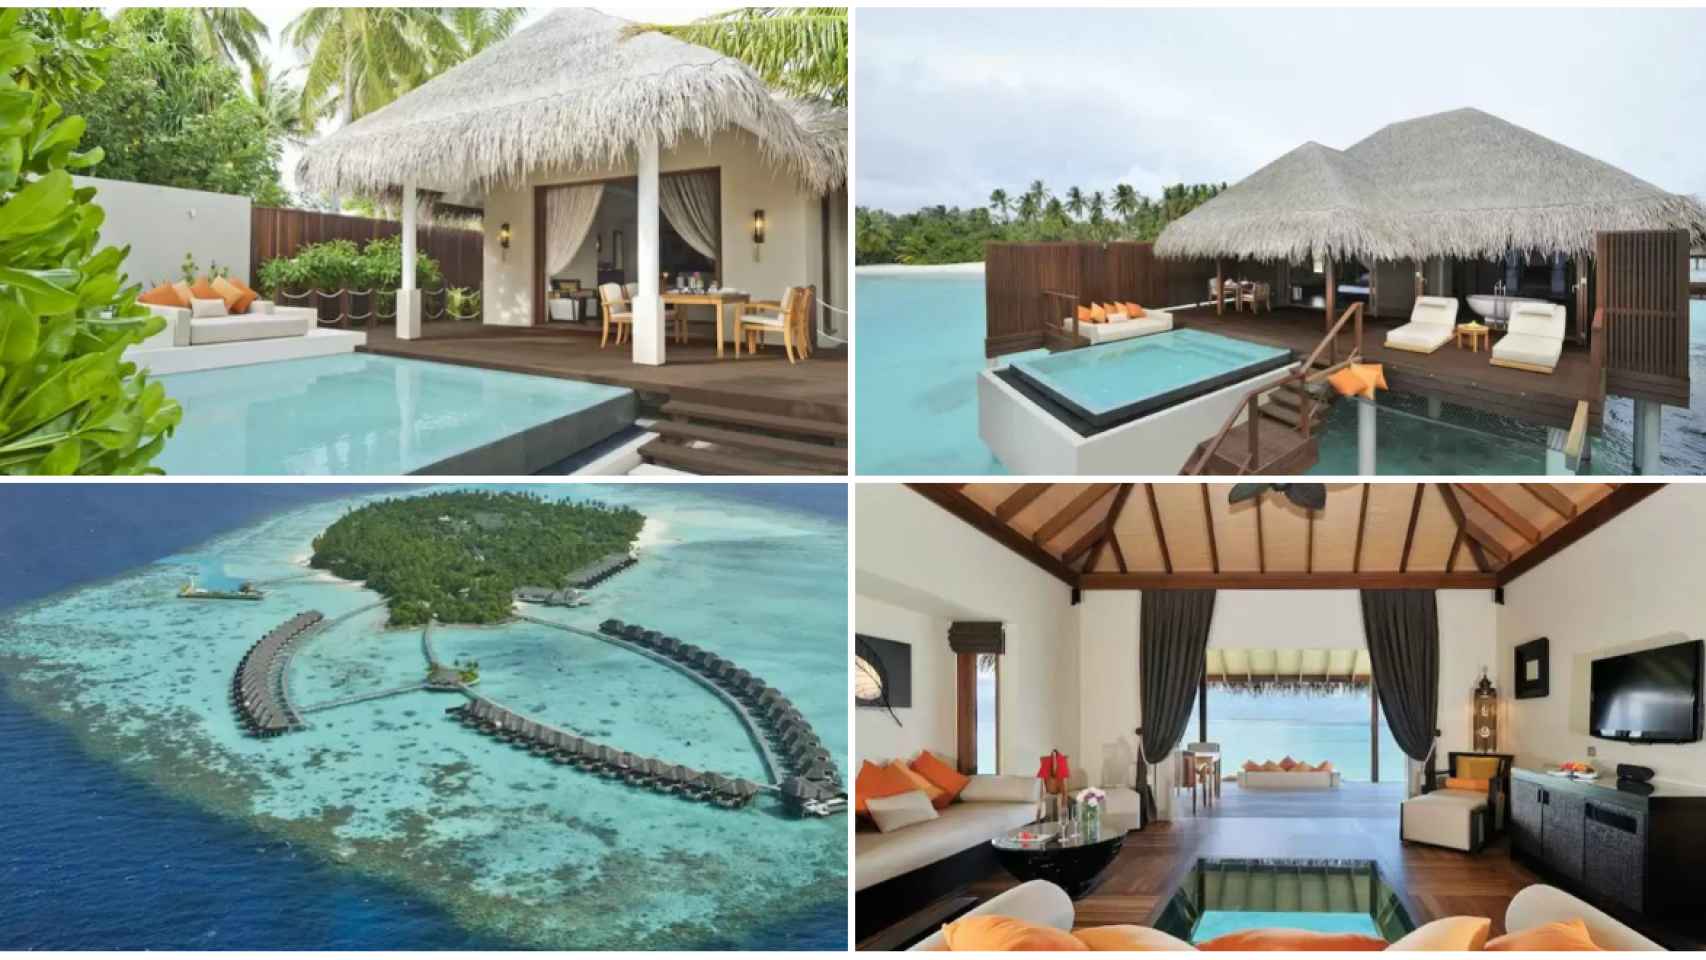 Algunas imágenes del lujoso hotel en el que se alojan en Maldivas.